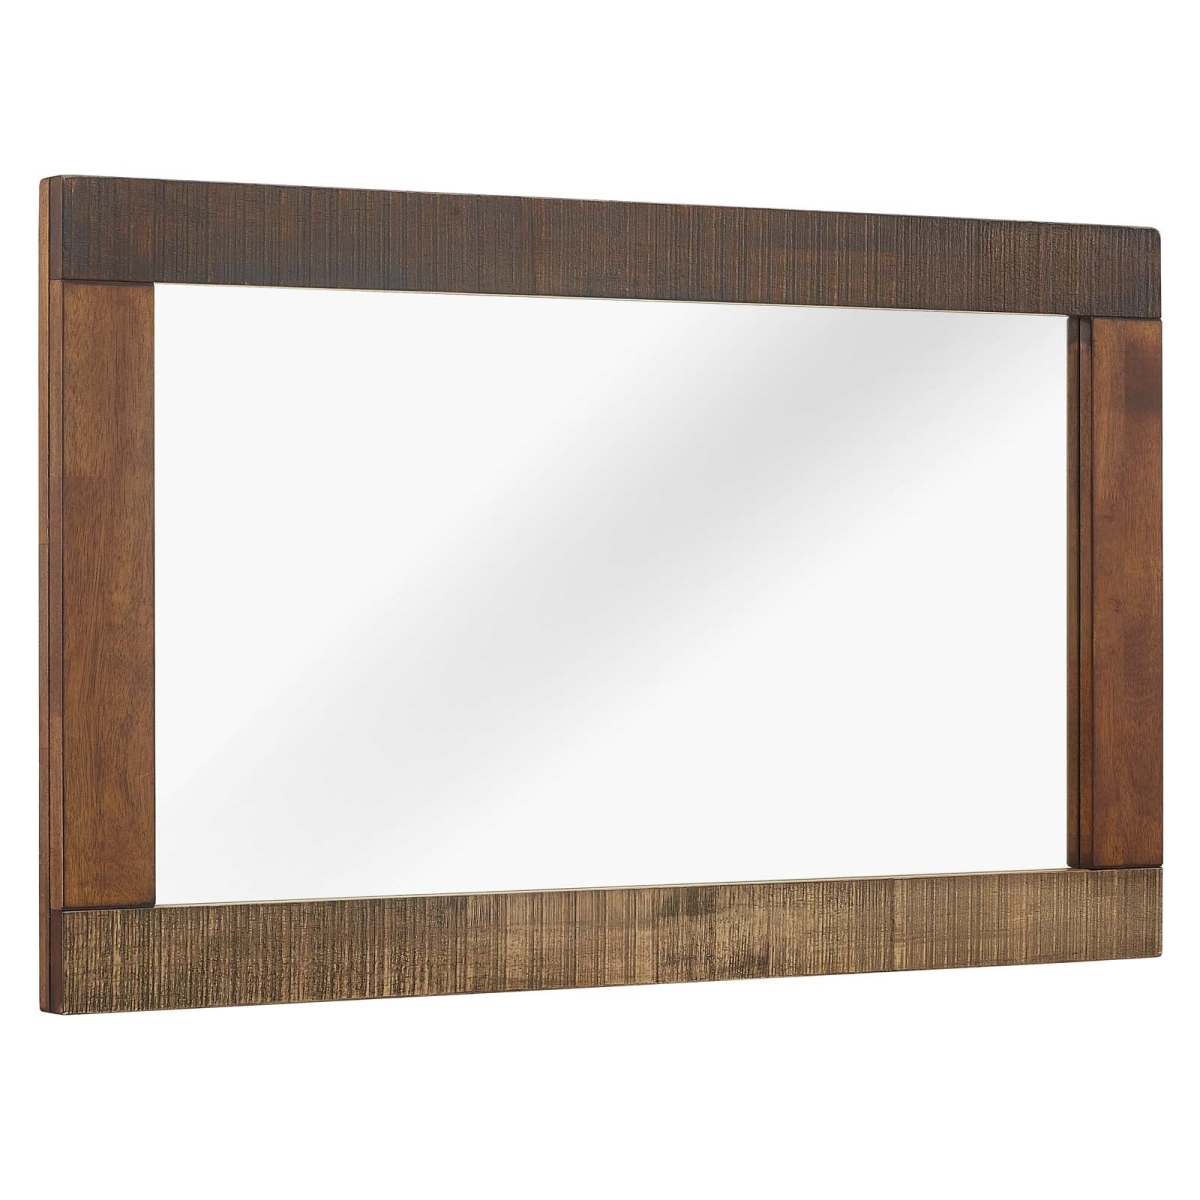 Mod-6063-wal Arwen Rustic Wood Frame Mirror - Walnut, 23.5 X 39.5 X 1.5 In.